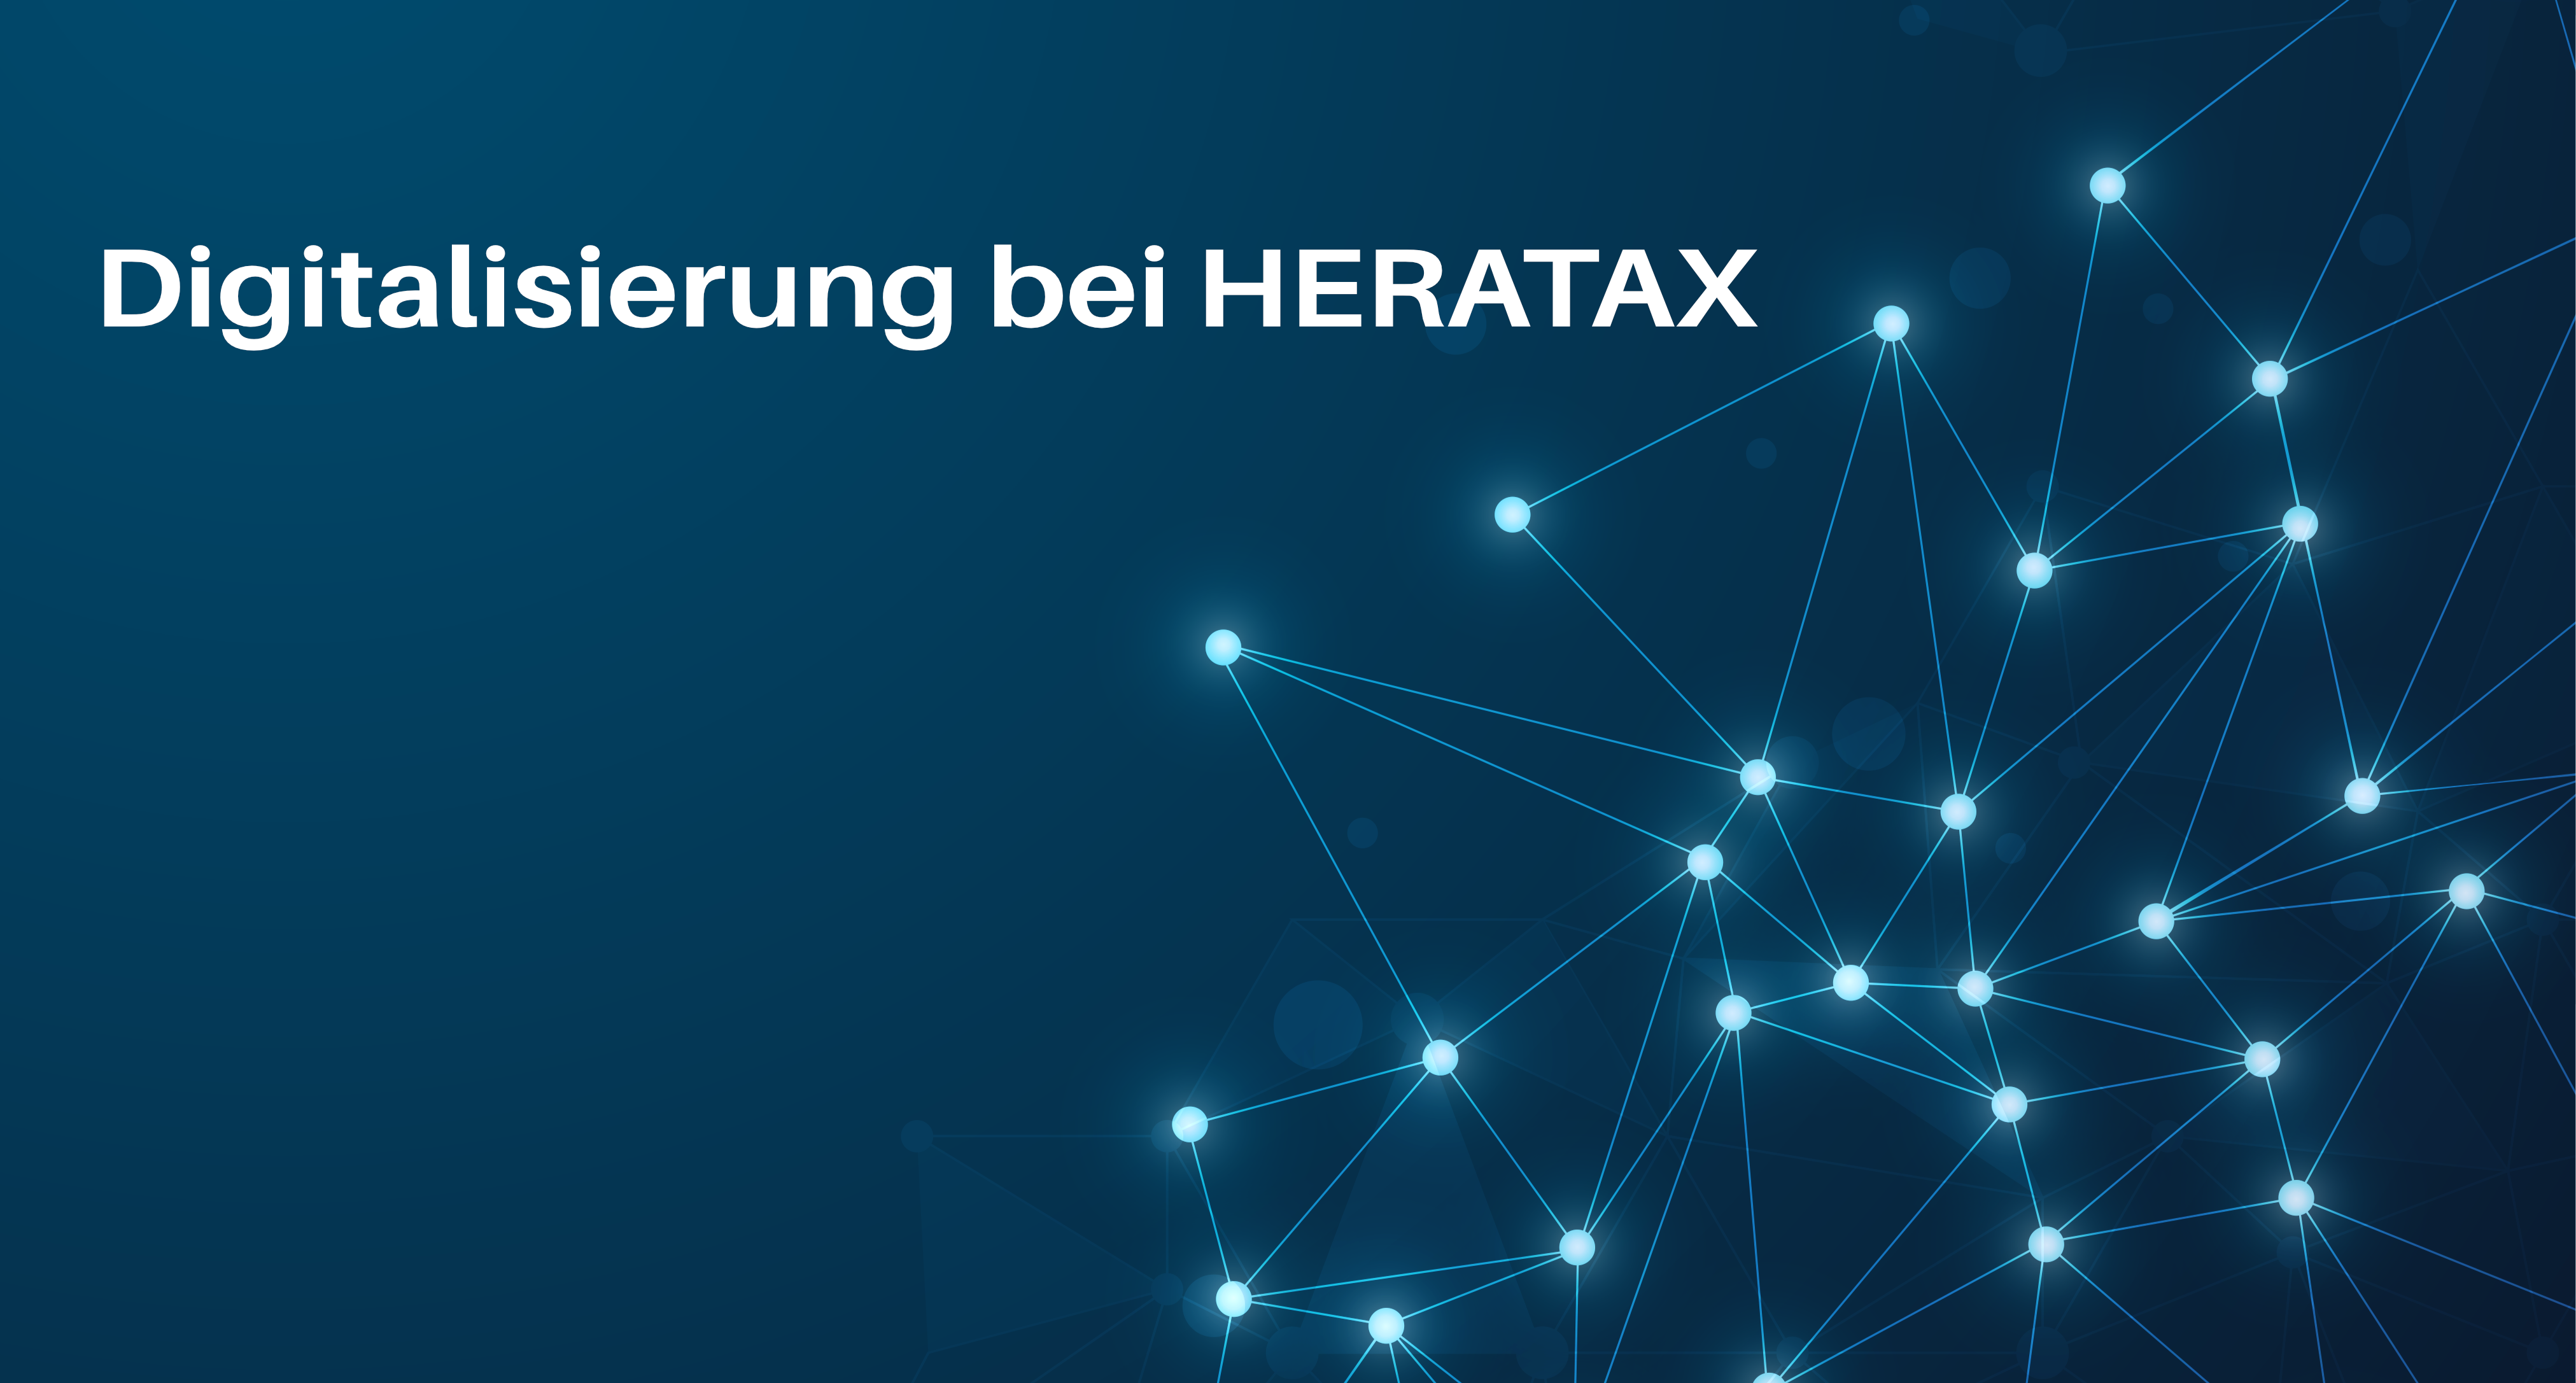 Schaubild Digitalisierung bei HERATAX Steuerberater Hamburg mit Netzwerk Punkten und Verknüpfungen in blau weiß leuchtend